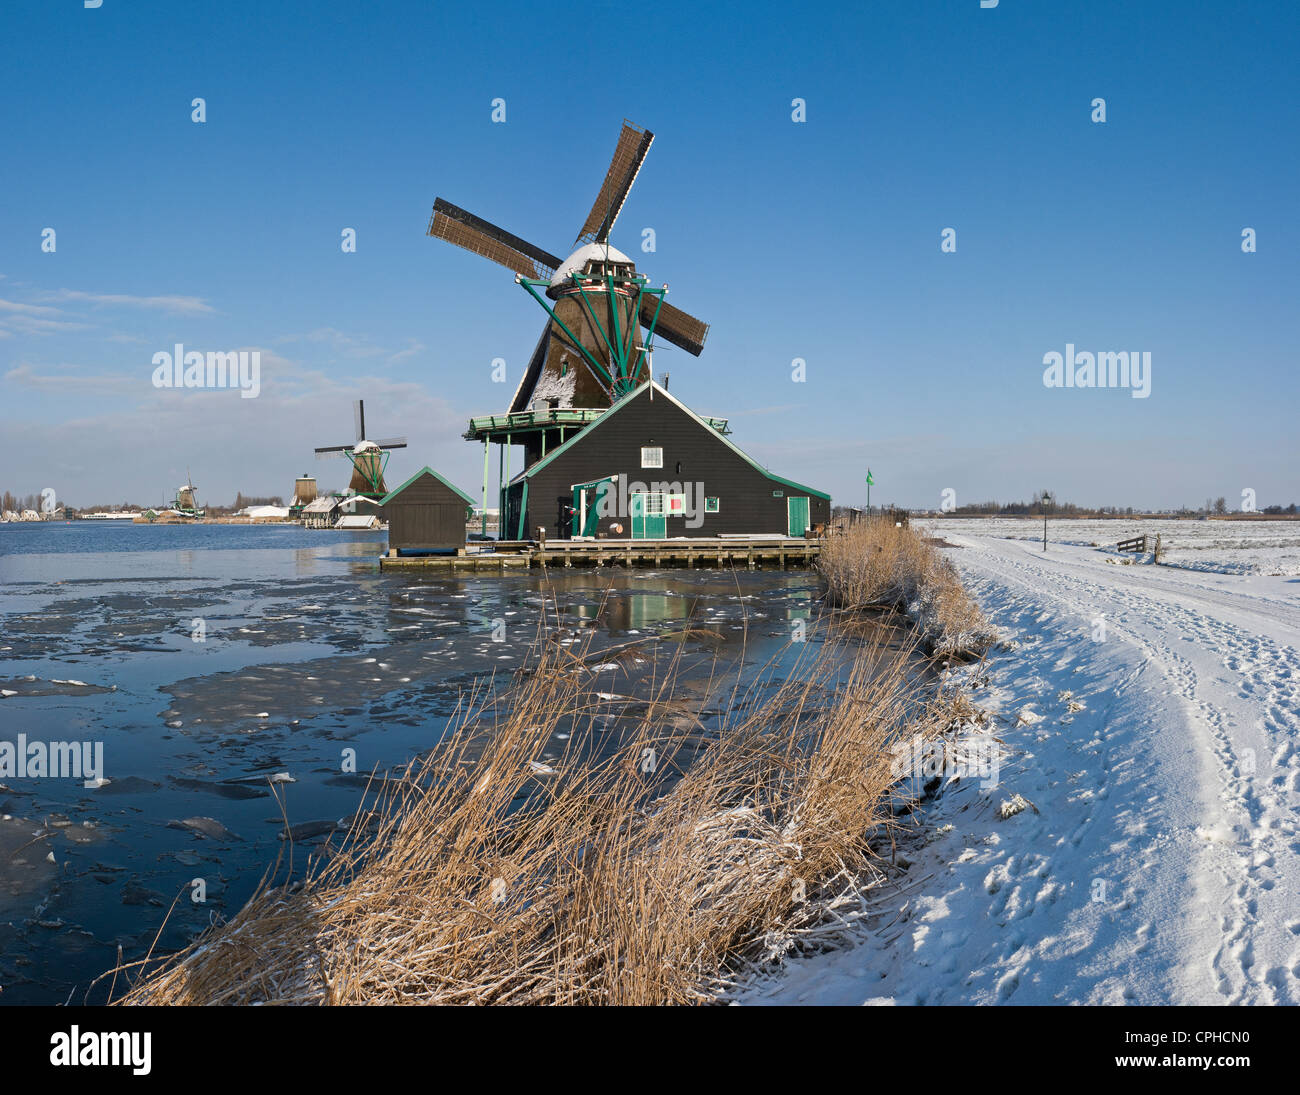 Netherlands, Holland, Europe, Zaandam, Windmill, Water, Winter, Snow, Ice, Open air, museum, De Zaanse Schans, Stock Photo